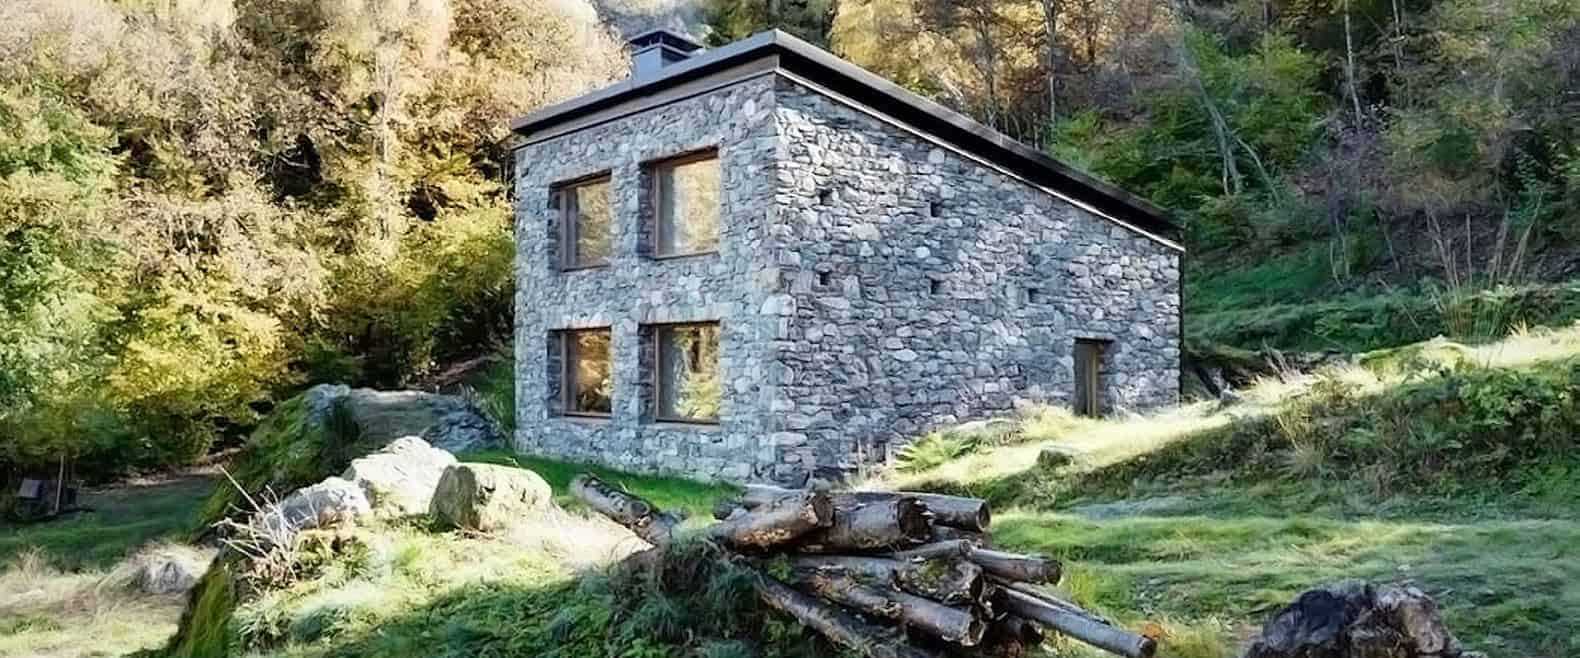 cabana de pedra no norte da Itália-1.jpg